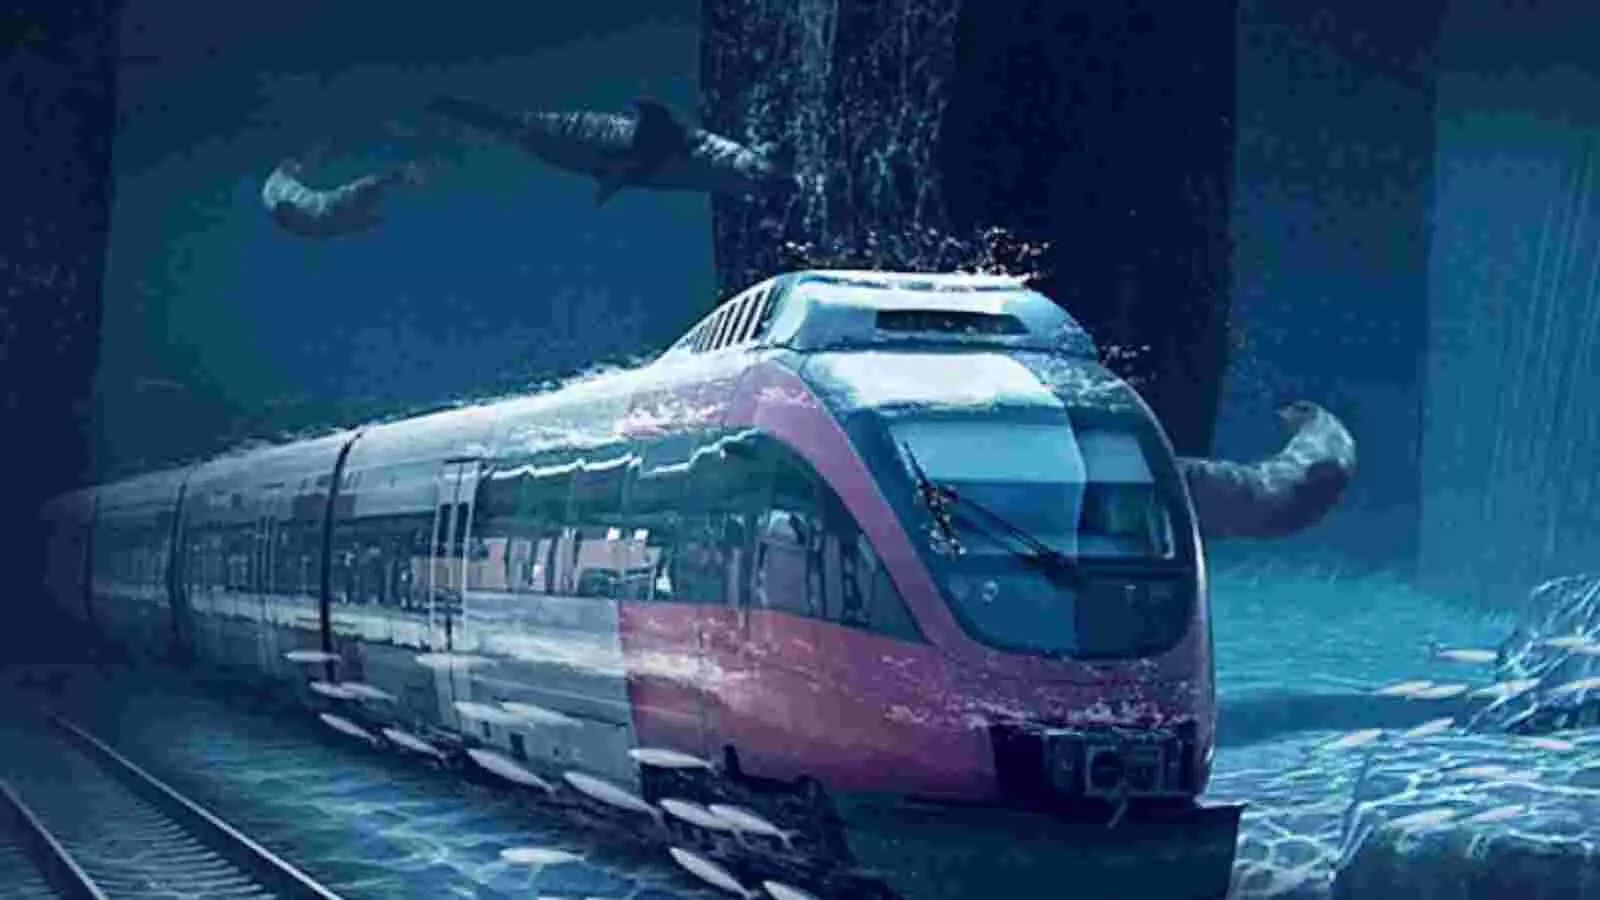 Kolkata Metro : भारत में पहली बार नदी के नीचे दौड़ी मेट्रो, हुगली नदी के नीचे से हावड़ा पहुंची, हैरान कर देगा VIDEO